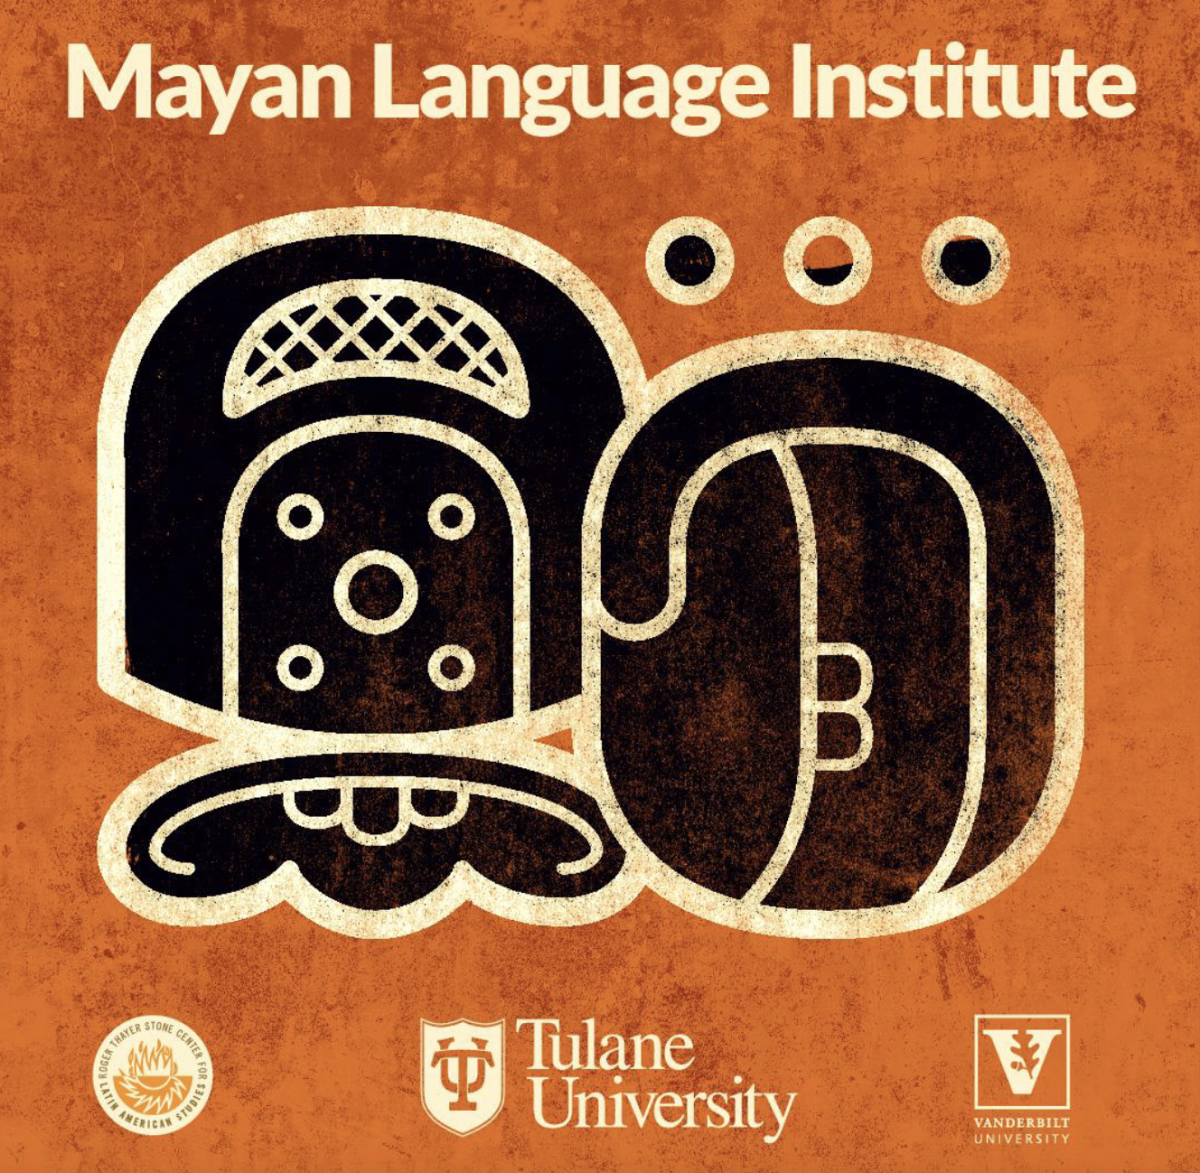 mayan language institute